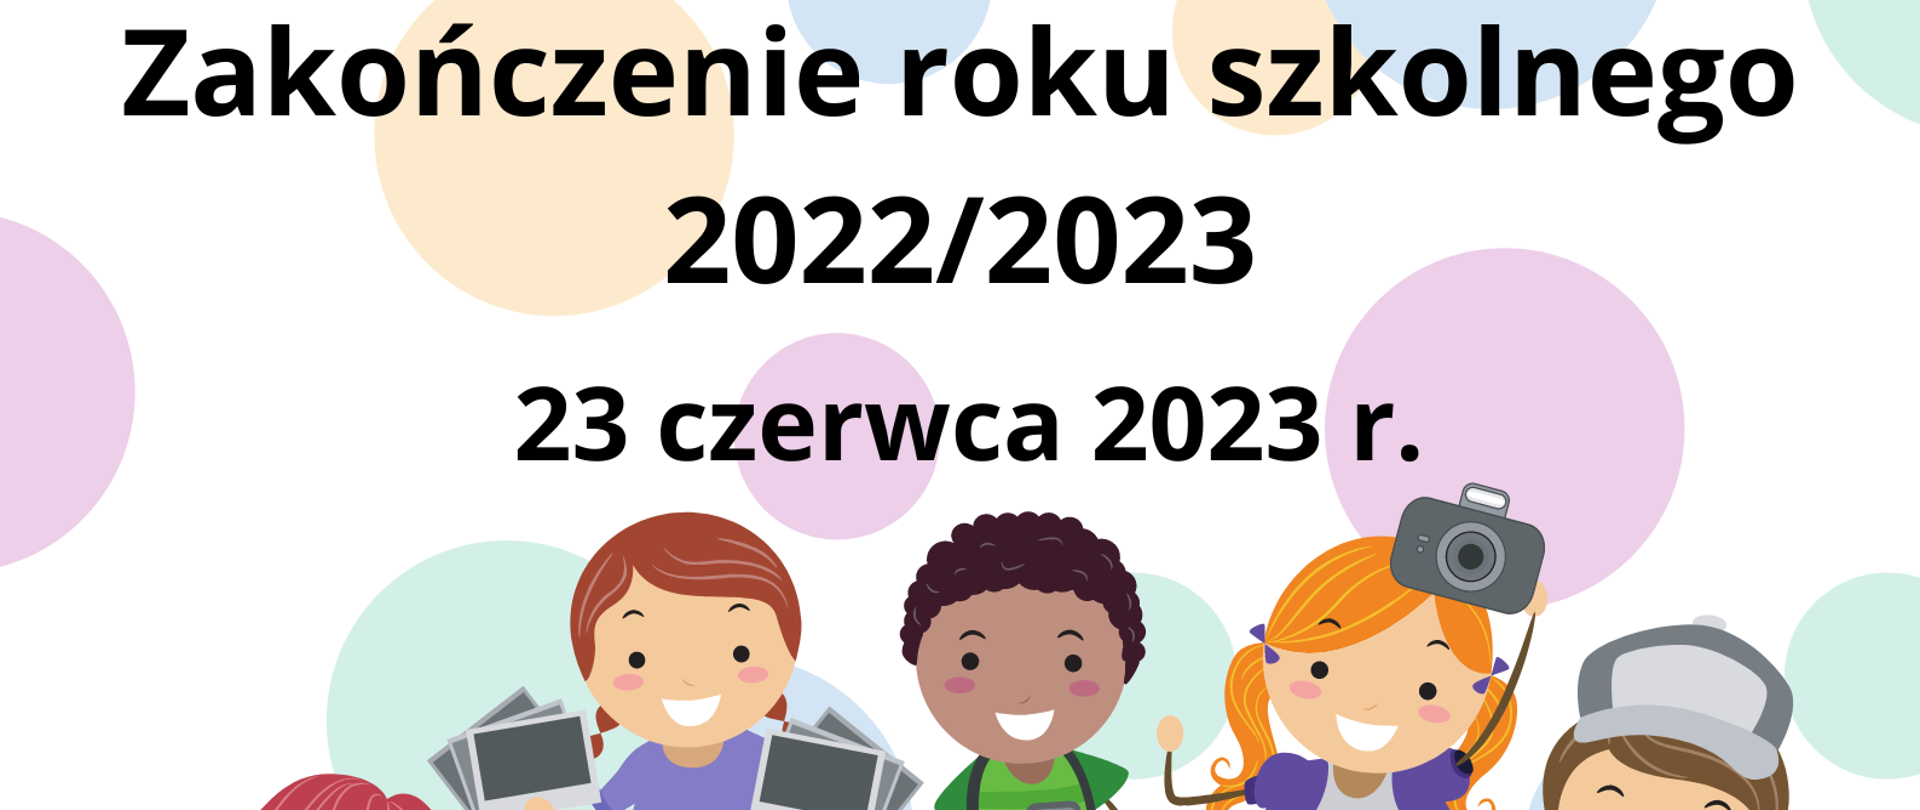 Plakat przedstawia informację o zakończeniu roku szkolnego w dniu 23 czerwca 2023 roku oraz kolorową grafikę dzieci z aparatami fotograficznymi.